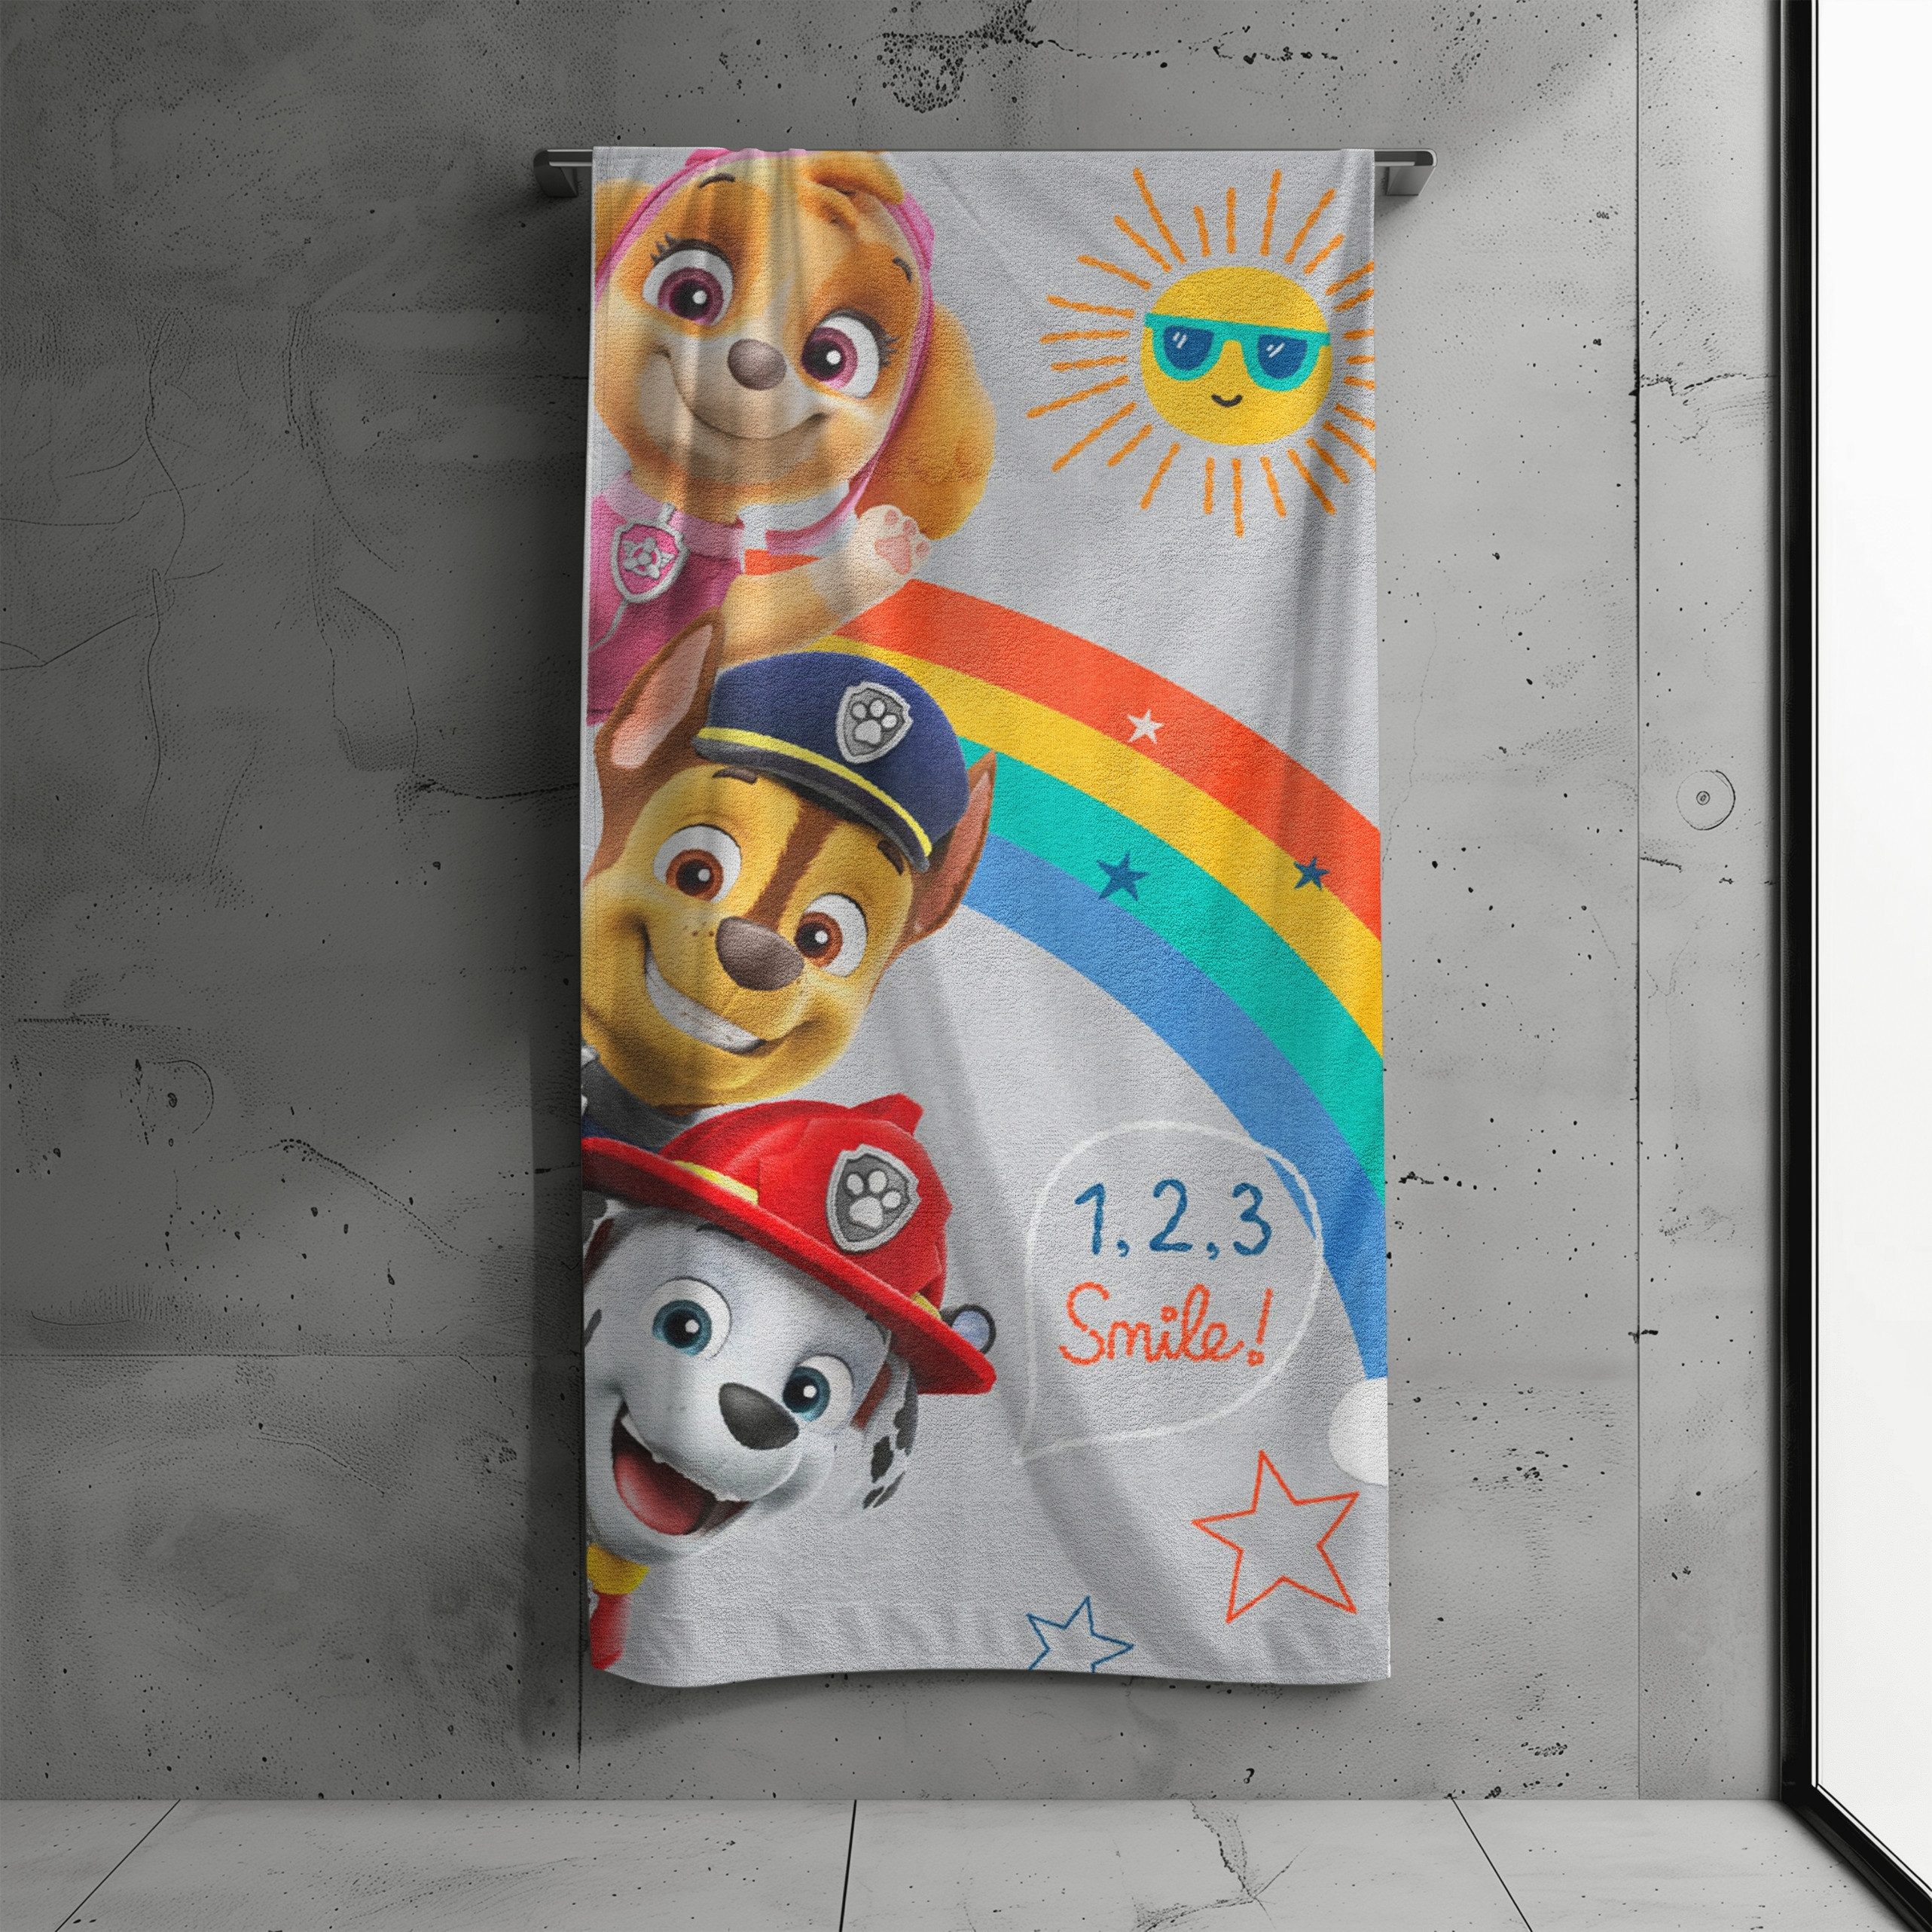 MTOnlinehandel Badetuch Paw Patrol 70x140 cm, 100 %, Baumwolle (1-St), Strandtuch Smile Regenbogen mit Chase, Marshall & Skye für Kinder